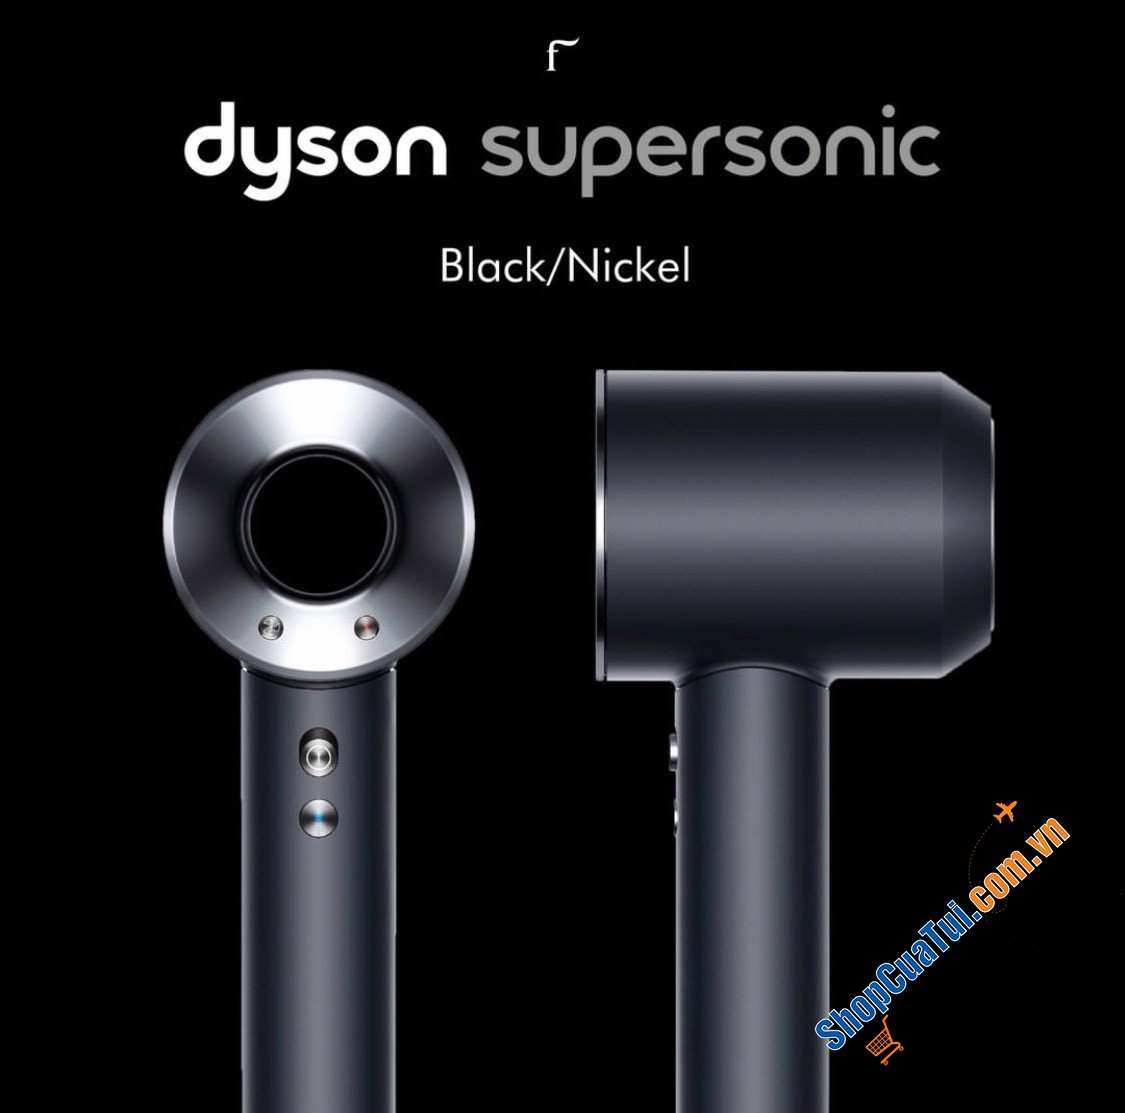 Bộ sấy tóc DYSON HD08 - phiên bản màu đen - sịn sò, không hỏng tóc, giảm gãy rụng, giúp tóc bóng mượt sau gội